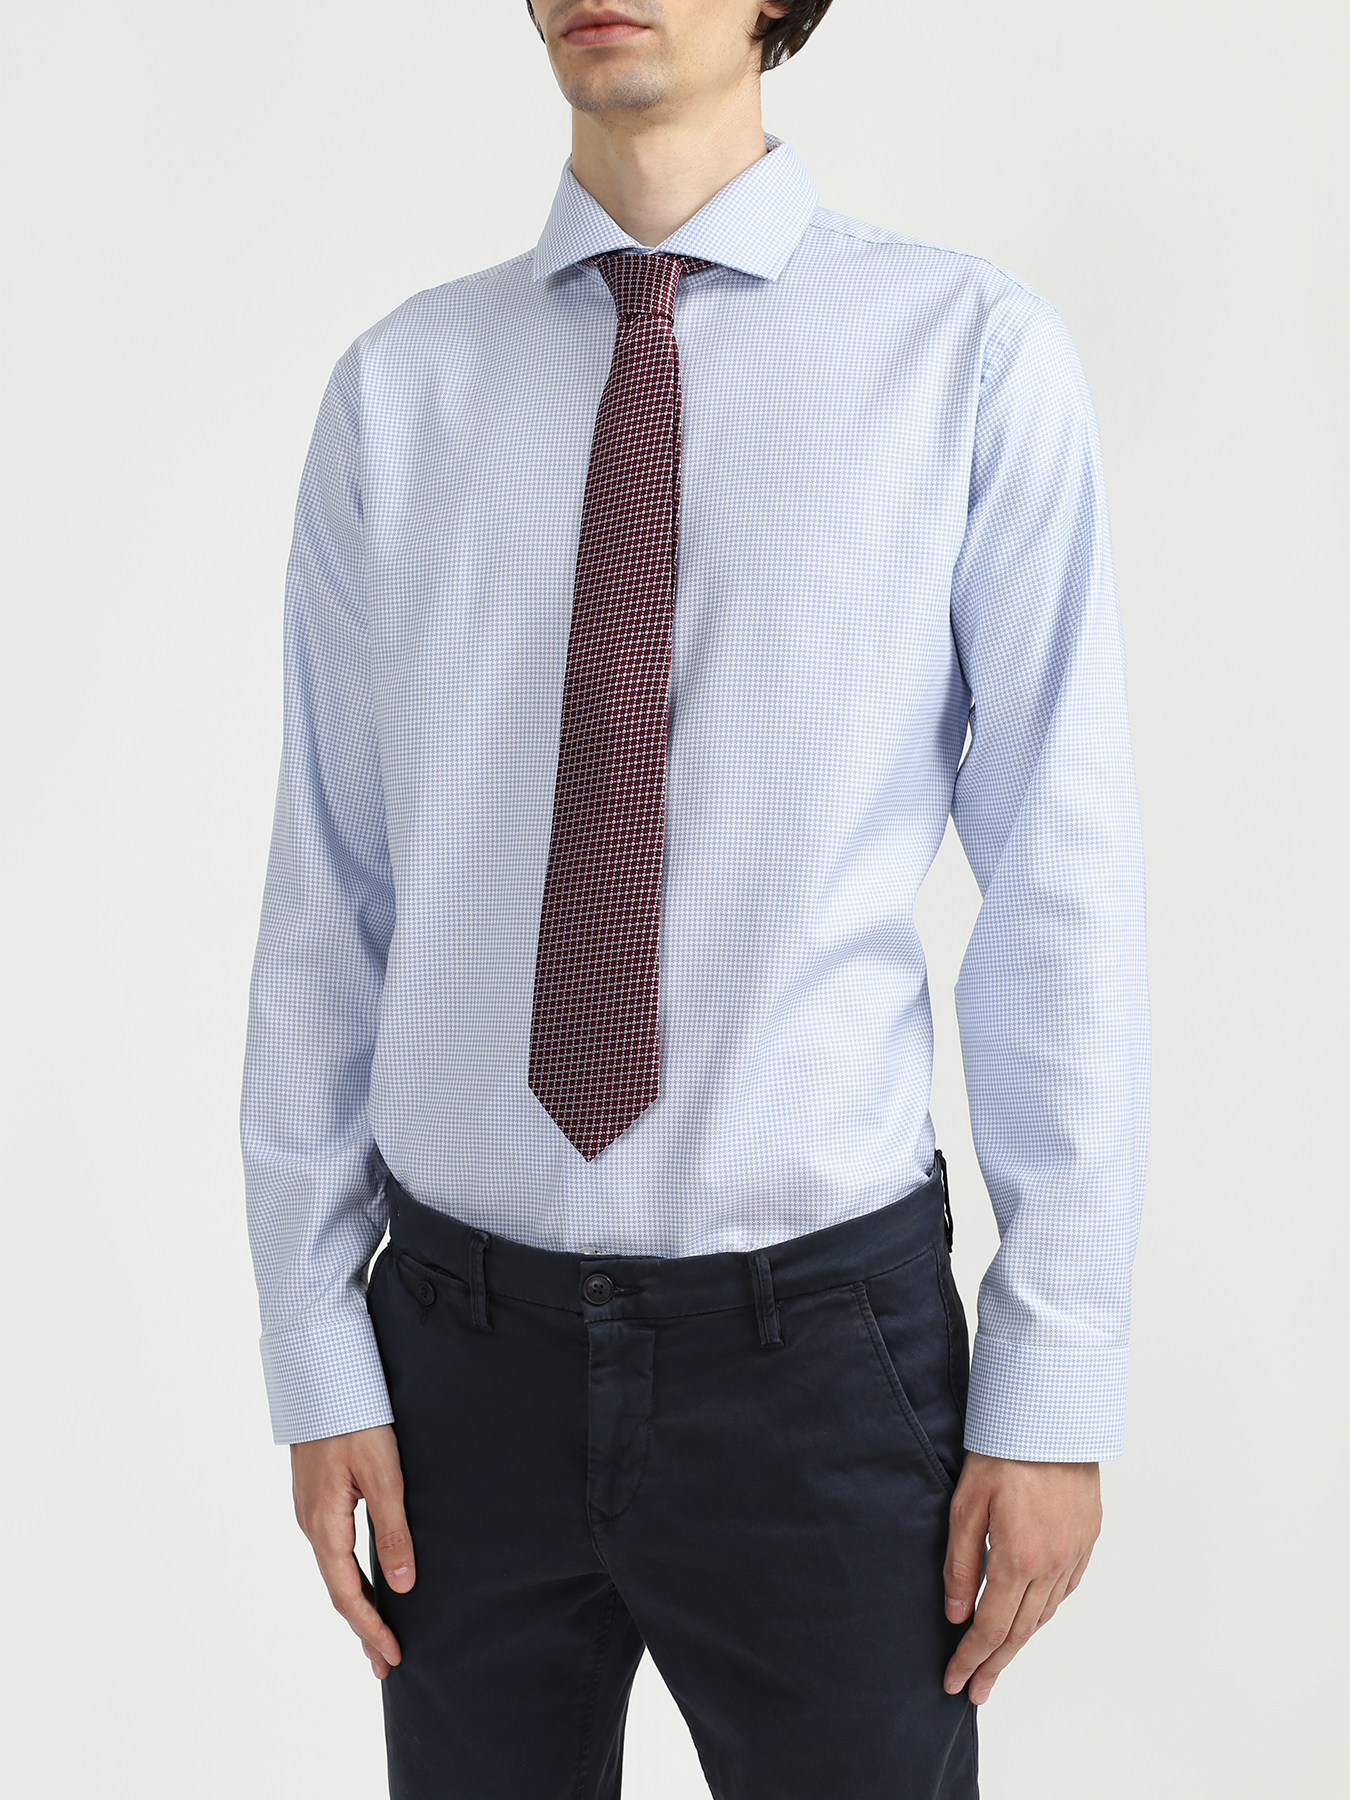 Ritter Шелковый галстук 312371-185